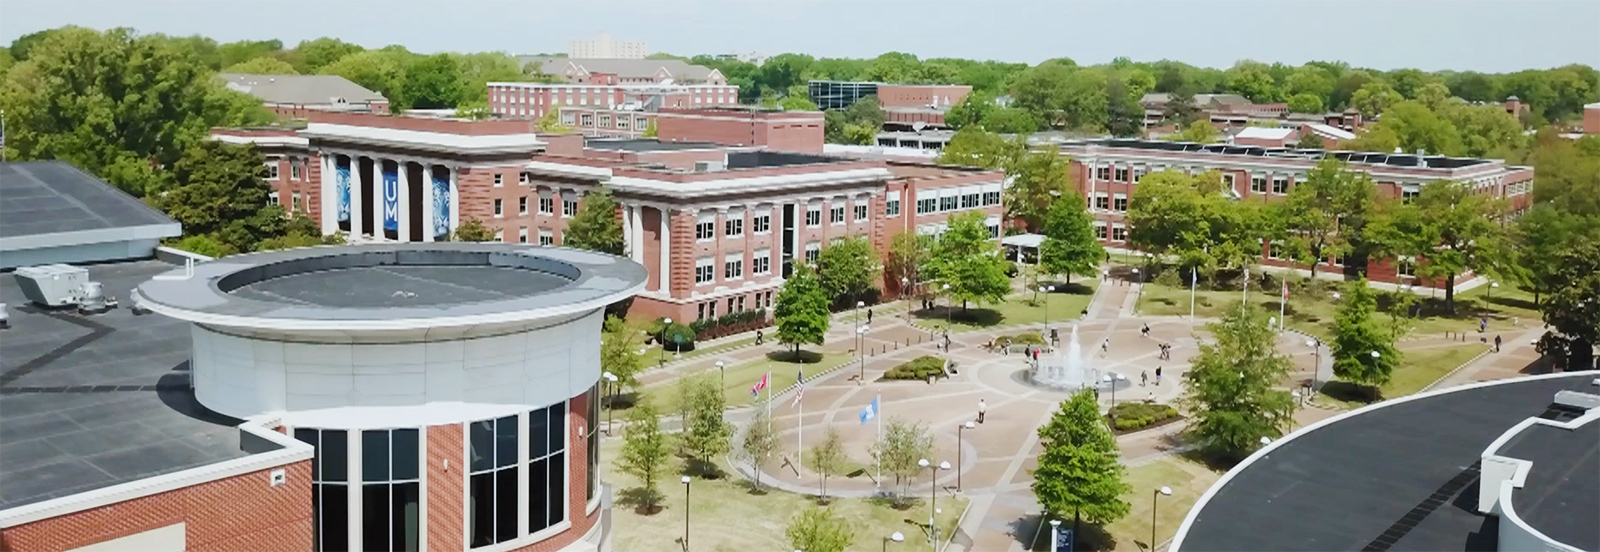 University of Memphis Campus